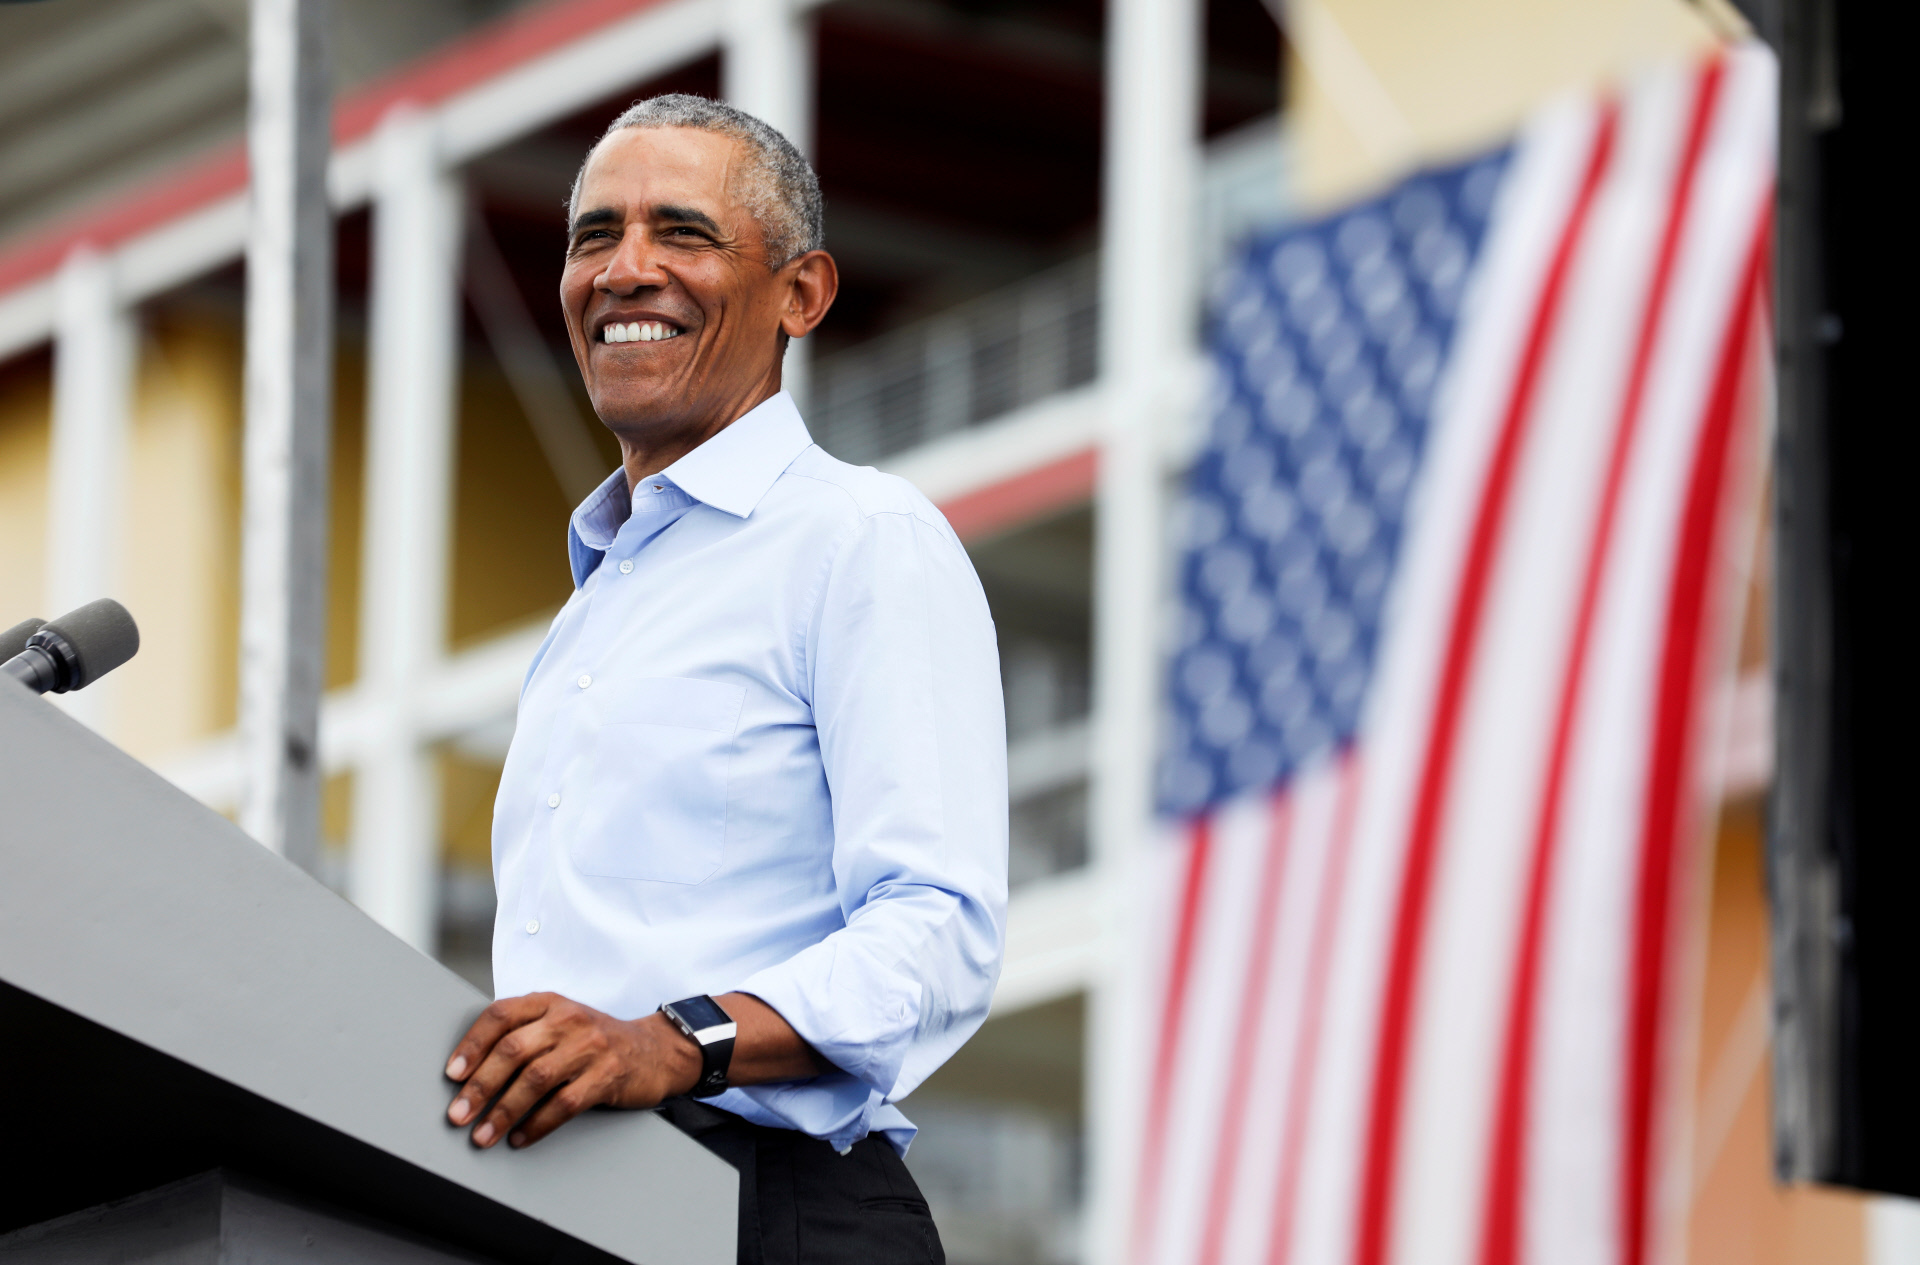 El 60 cumpleaos del millonario Obama: una fiesta libre de Covid, donaciones y muchos famosos